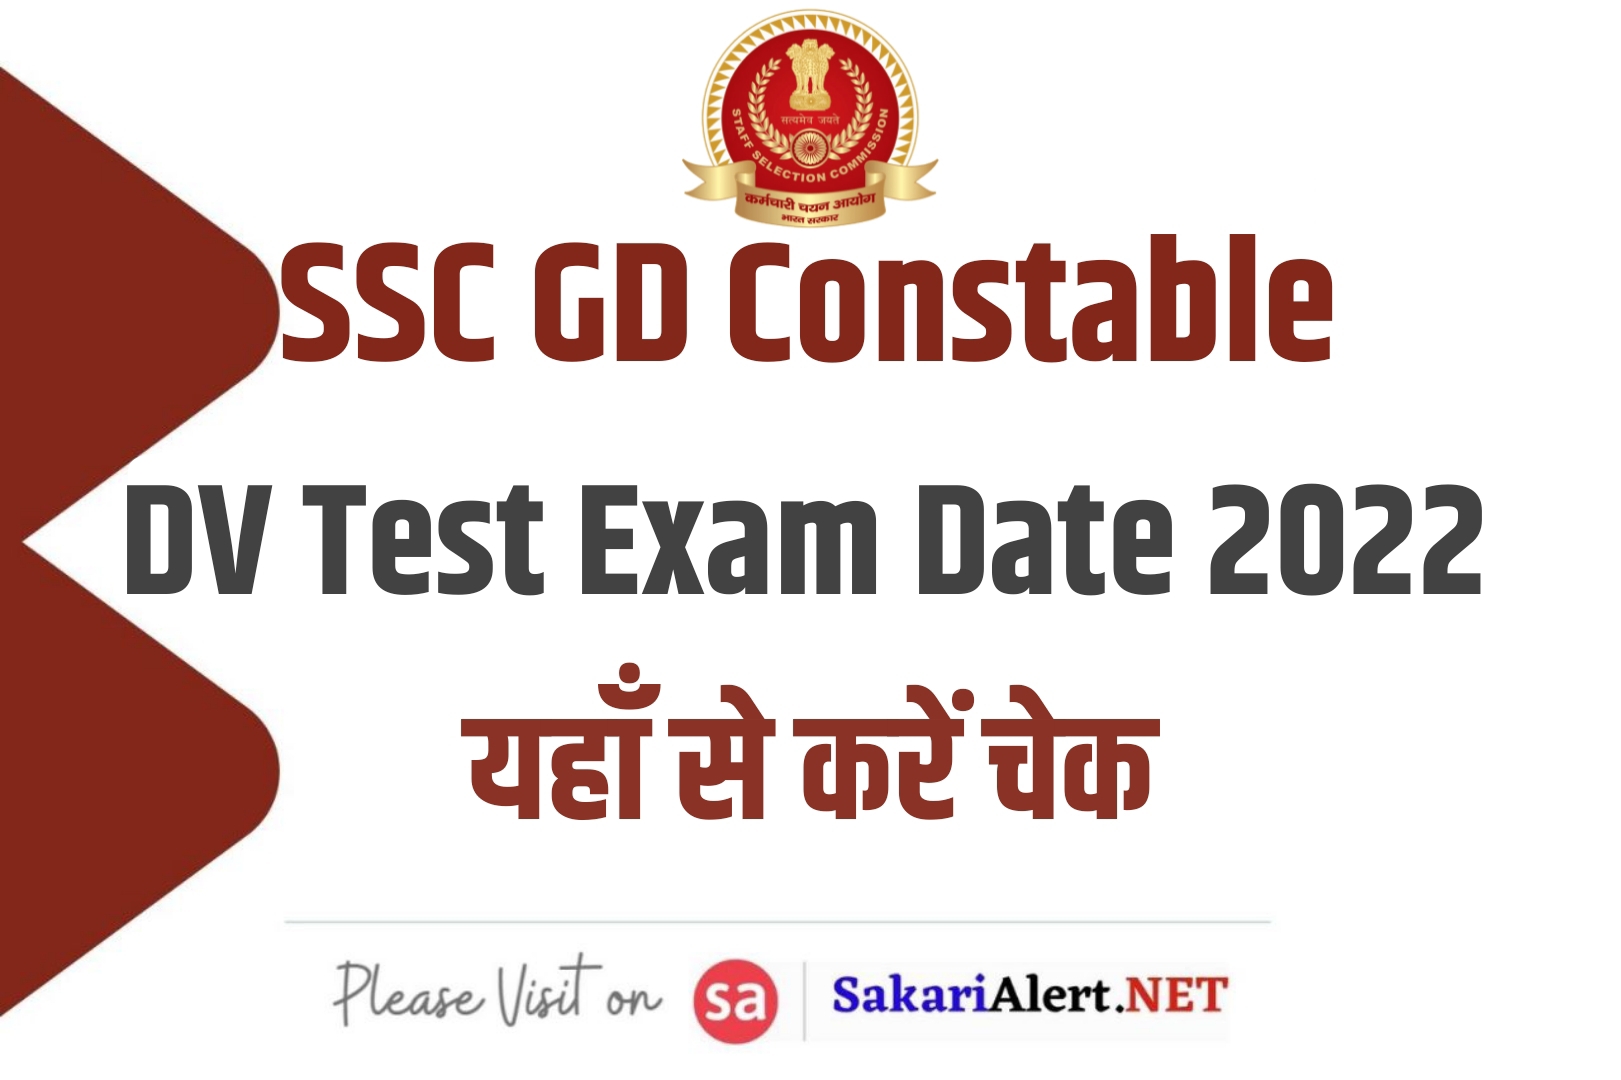 SSC GD Constable DV Test Exam Date 2022